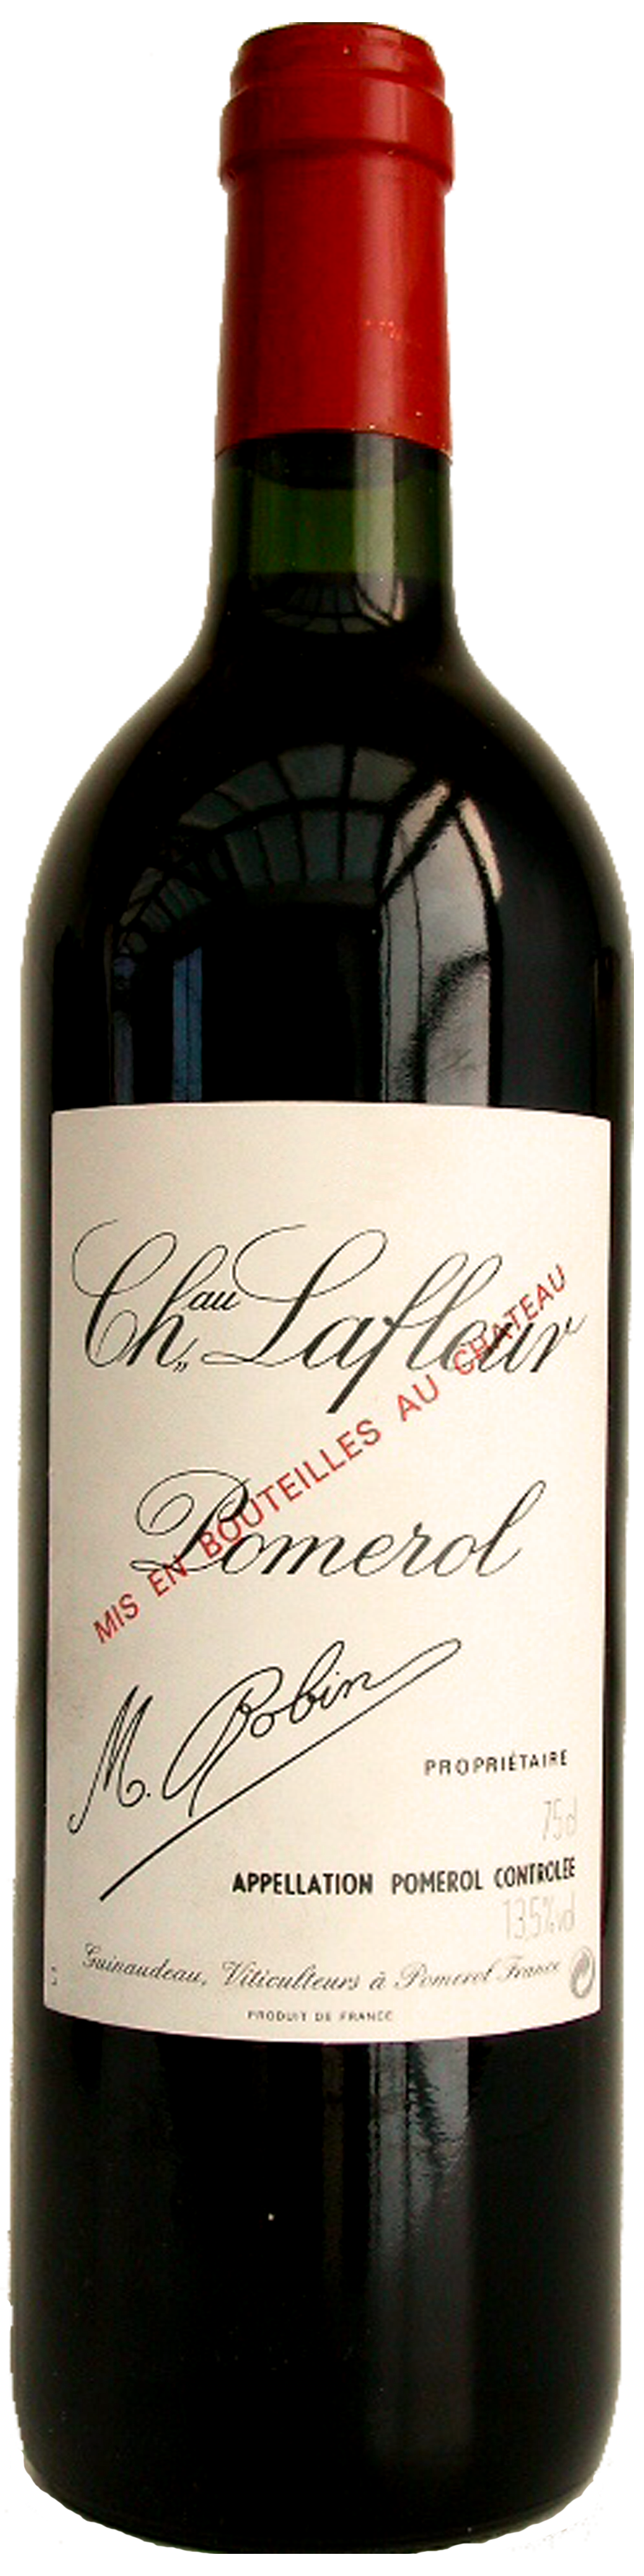 Bottle shot of 2007 Château Lafleur, Pomerol